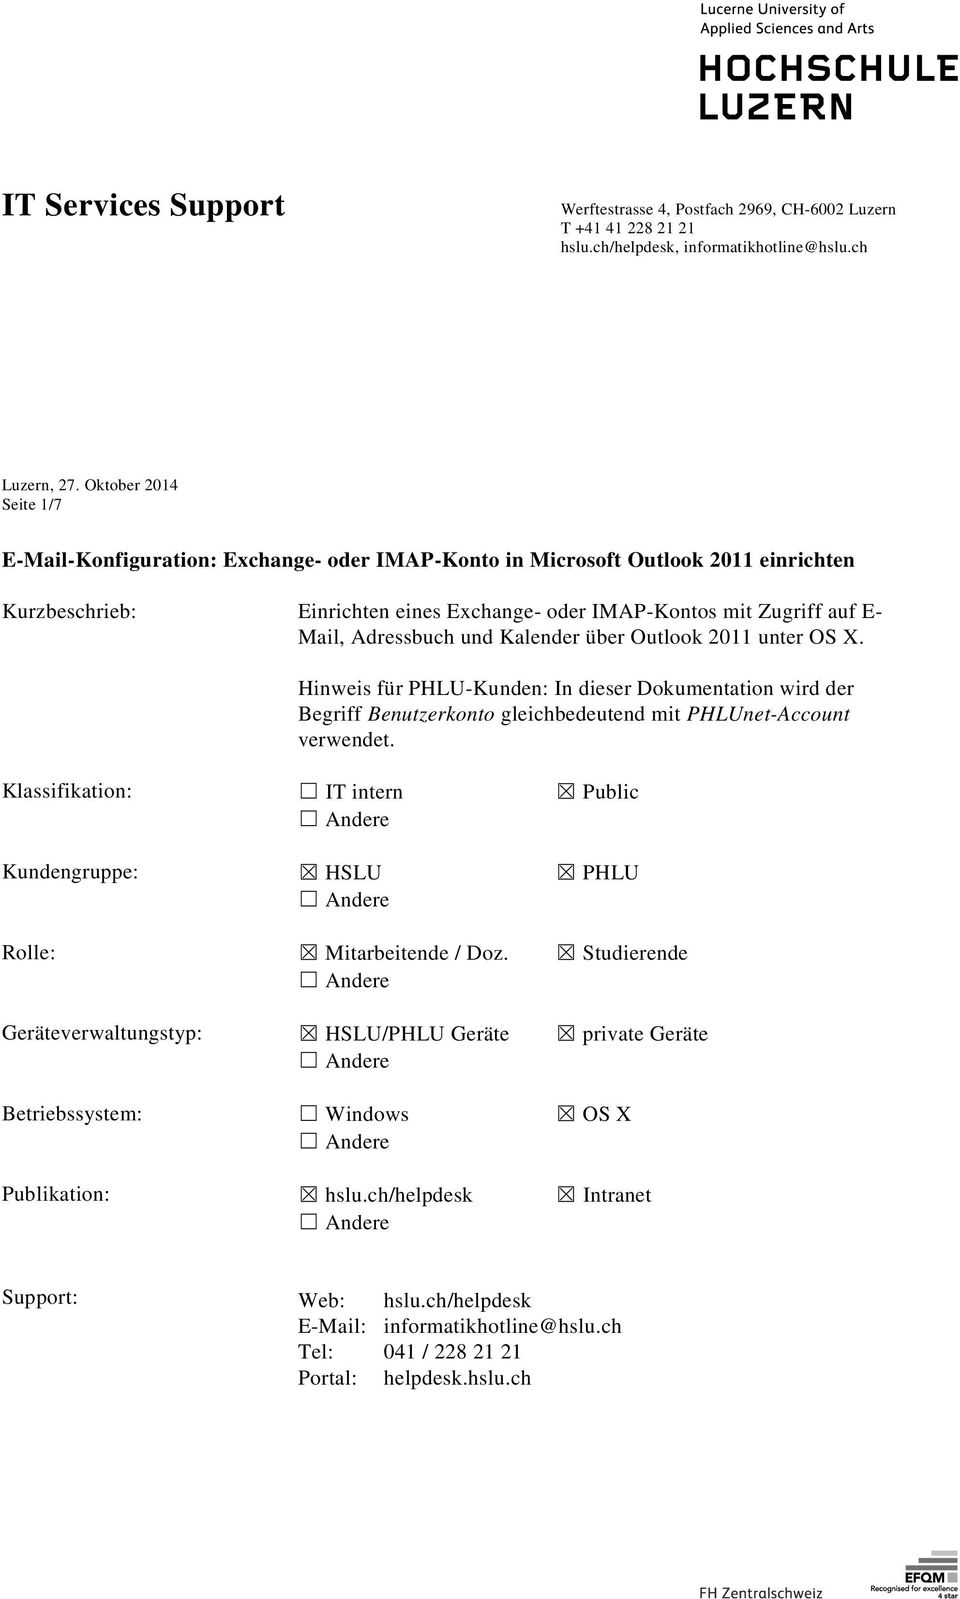 Kalender über Outlook 2011 unter OS X. Hinweis für PHLU-Kunden: In dieser Dokumentation wird der Begriff Benutzerkonto gleichbedeutend mit PHLUnet-Account verwendet.